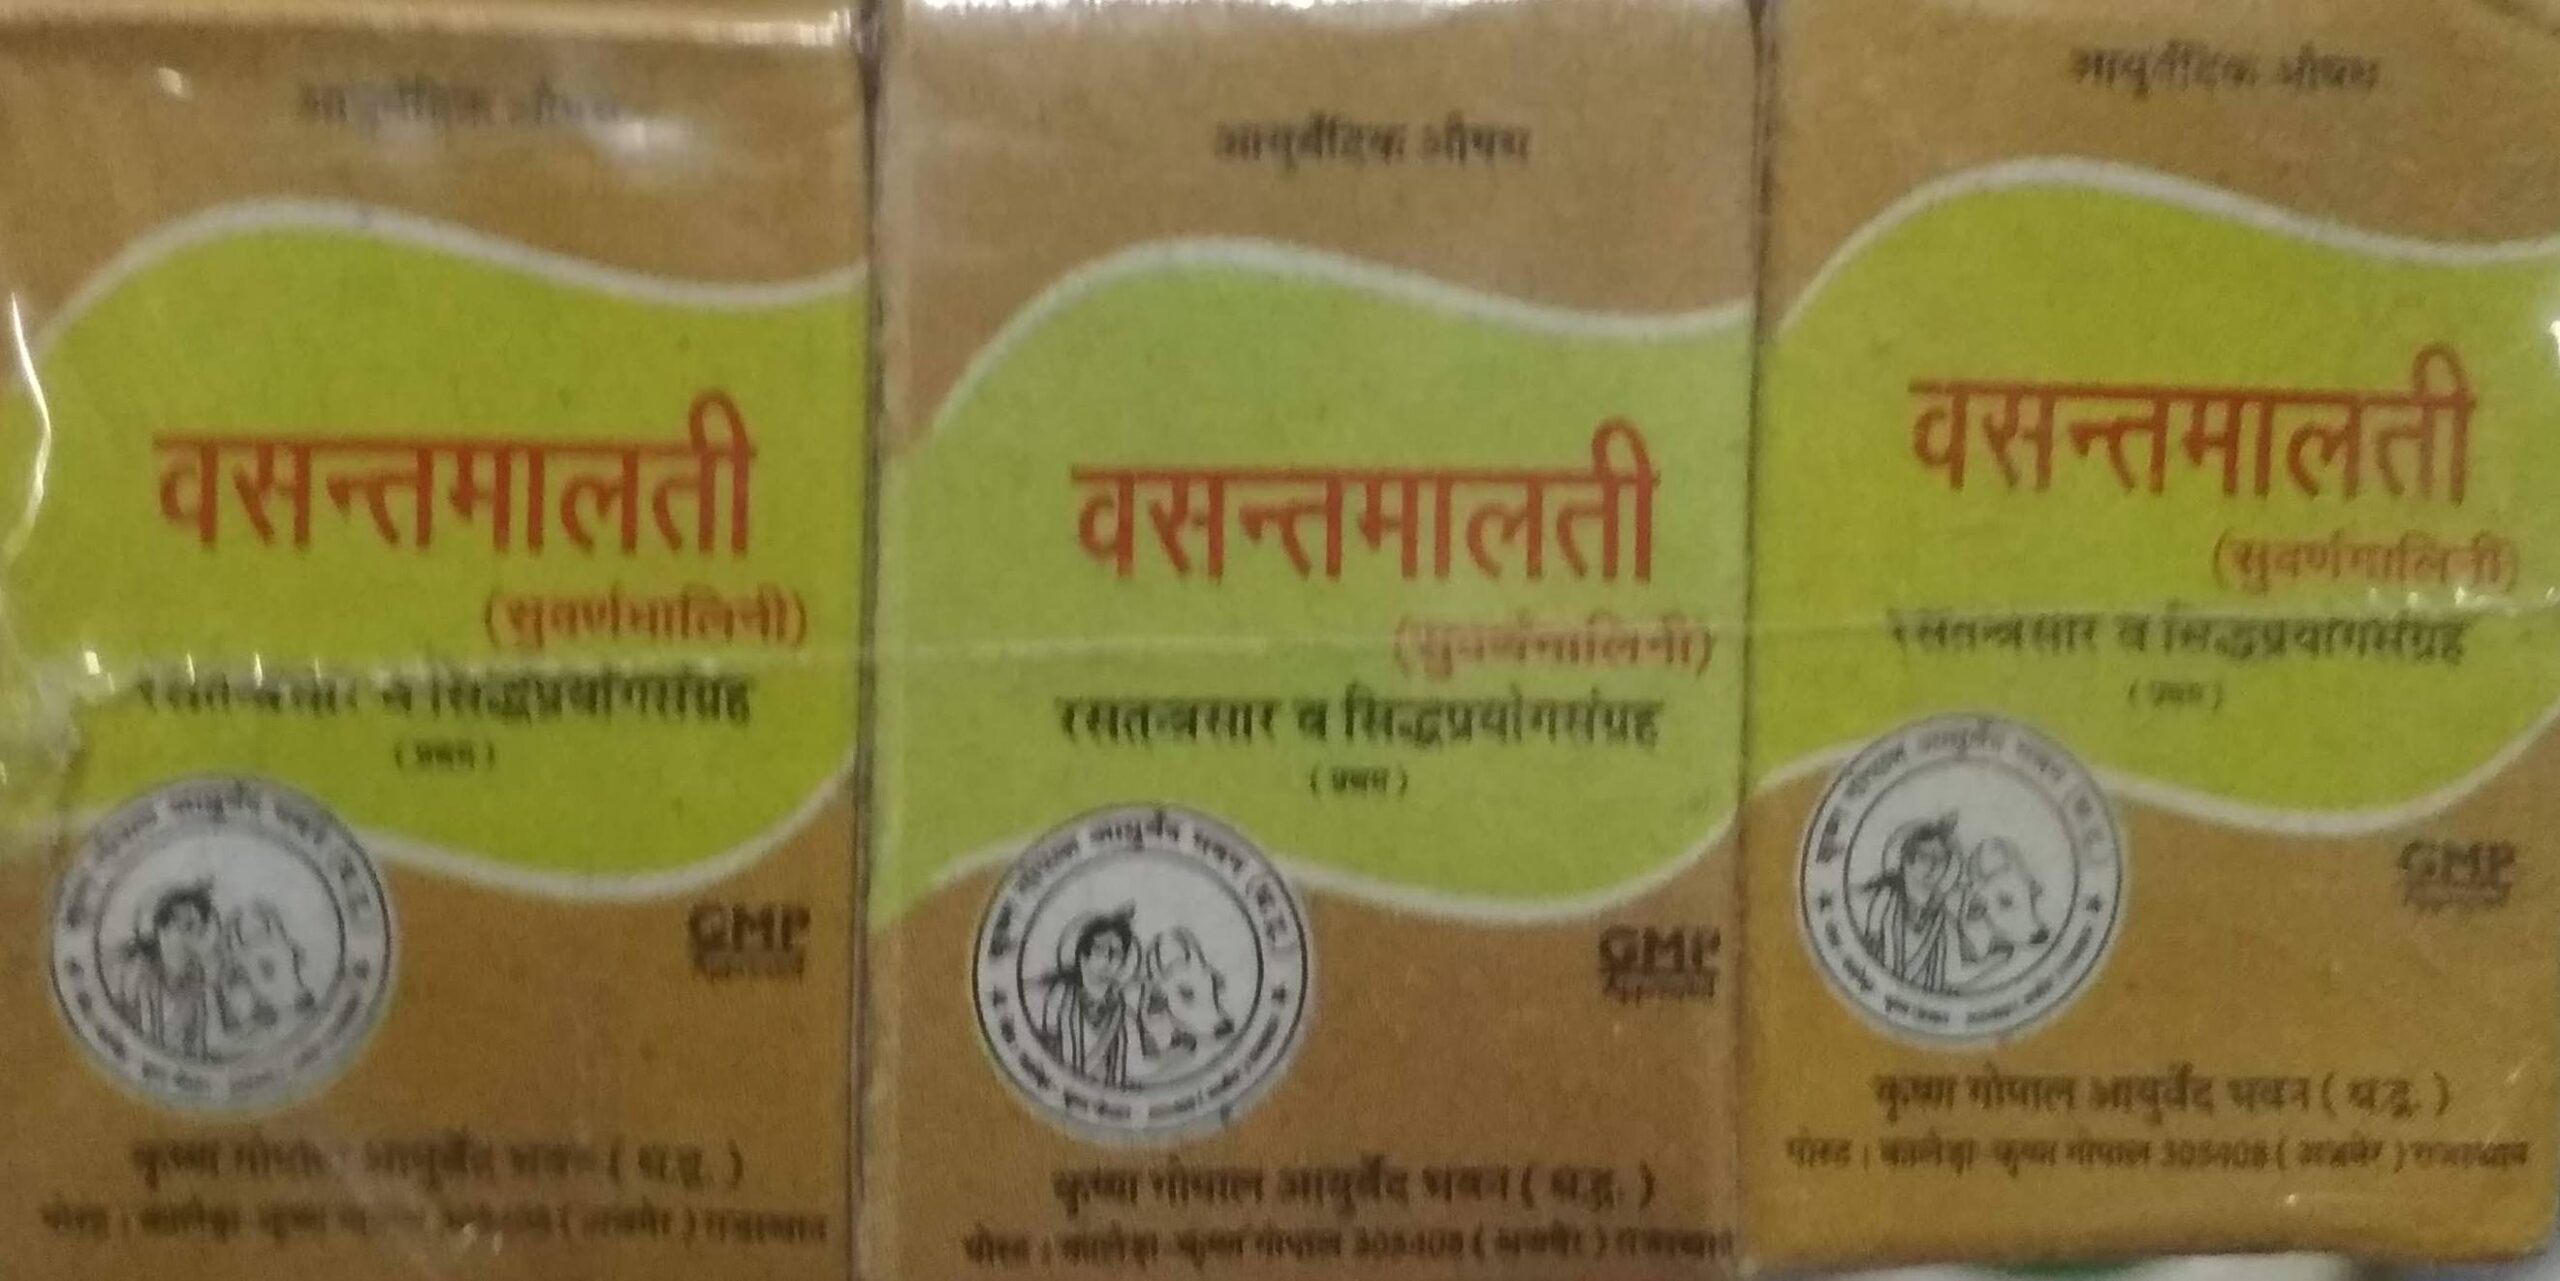 Vasant malati ras swarna yukt 2 gm upto 20% off Krishna Gopal Ayurved bhavan